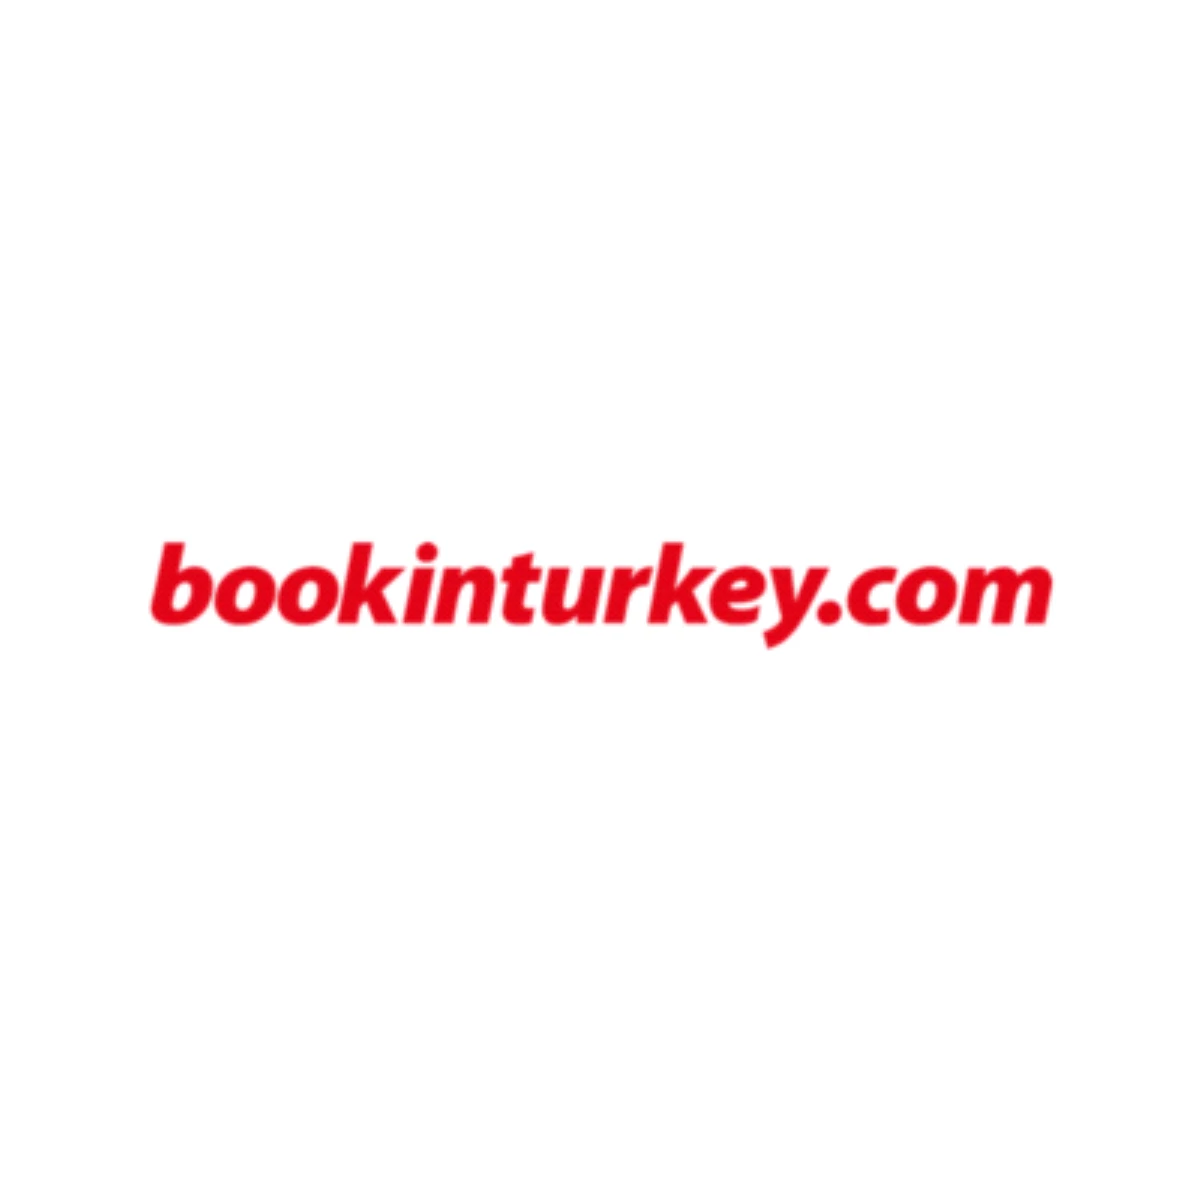 Bookinturkey.com, Sunduğu Kurumsal Hizmetler ile Şirketlerin Çözüm Ortağı Oluyor